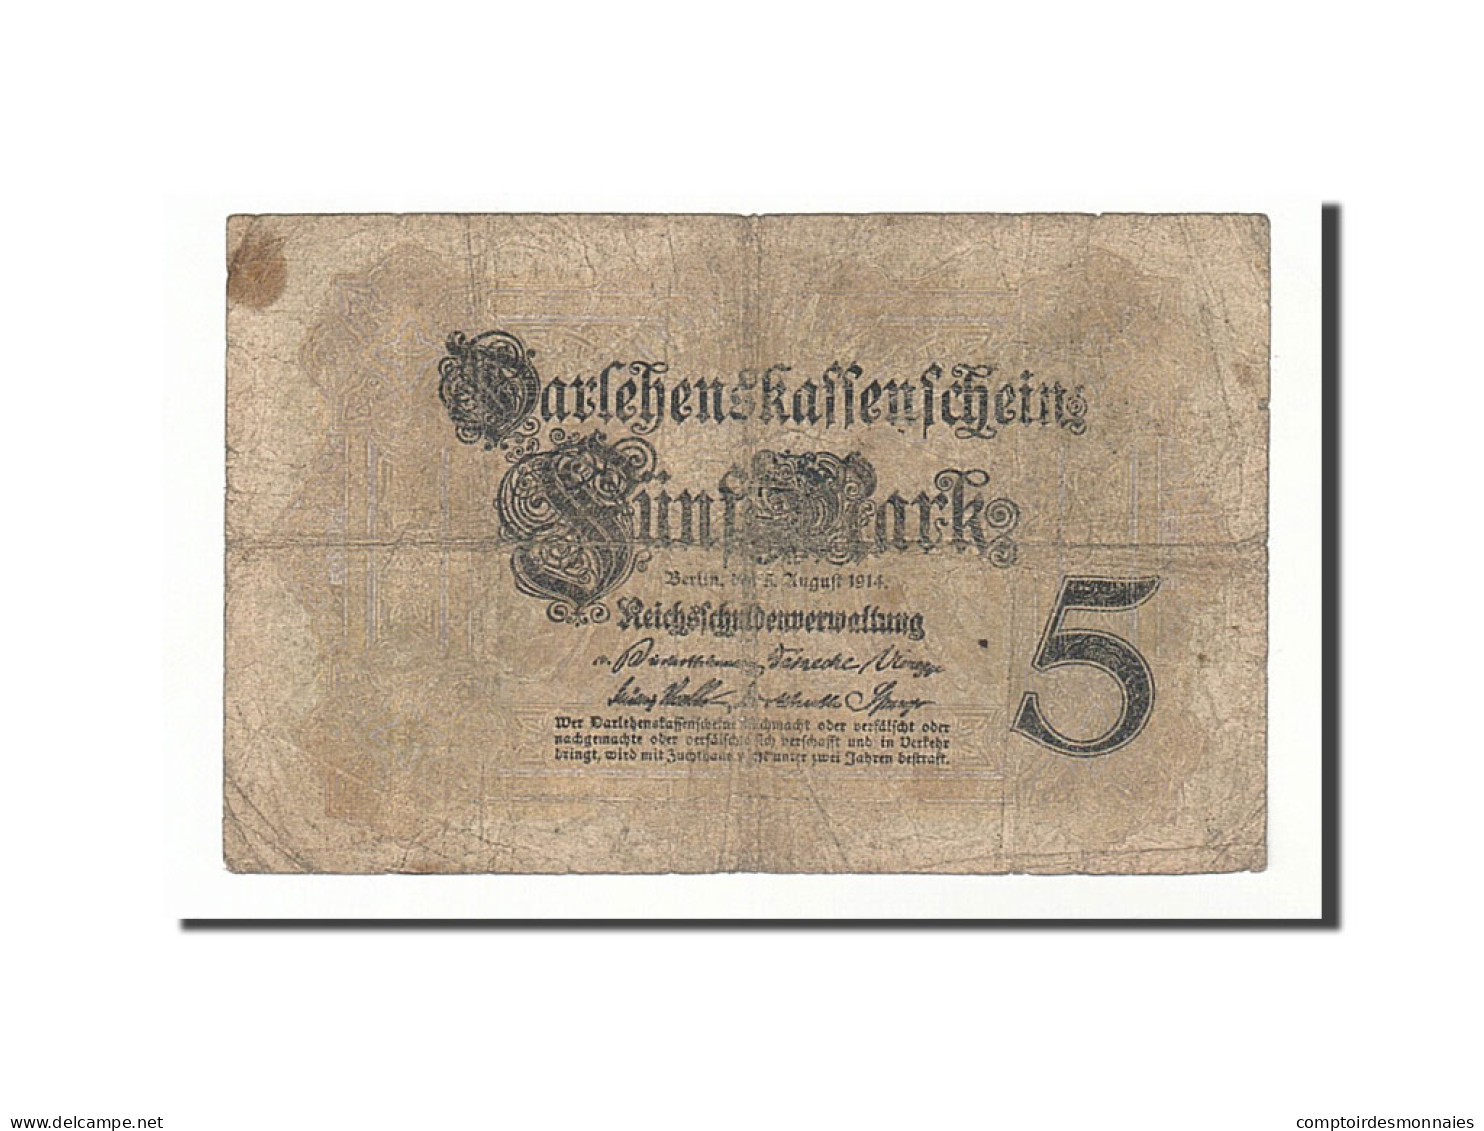 Billet, Allemagne, 5 Mark, 1914, 1914-08-05, KM:47b, B+ - 5 Mark